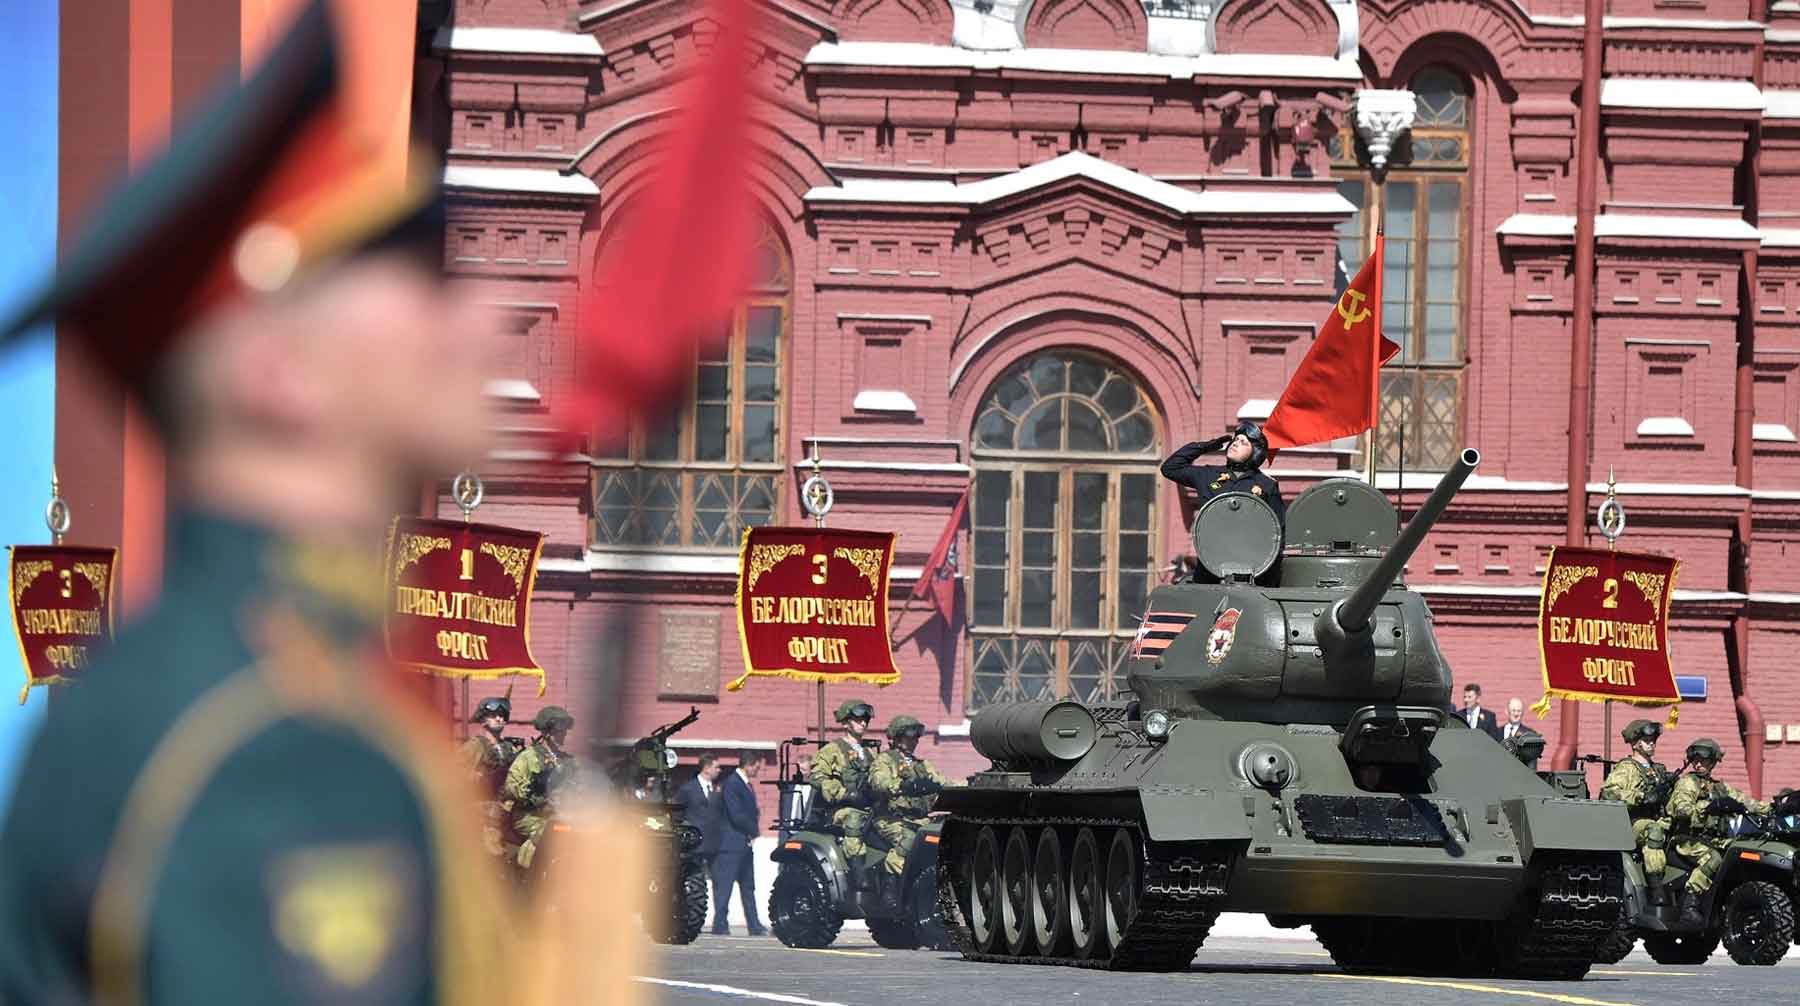 Dailystorm - Минобороны запустило спецпроект о парадах в День Победы 9 Мая в городах России